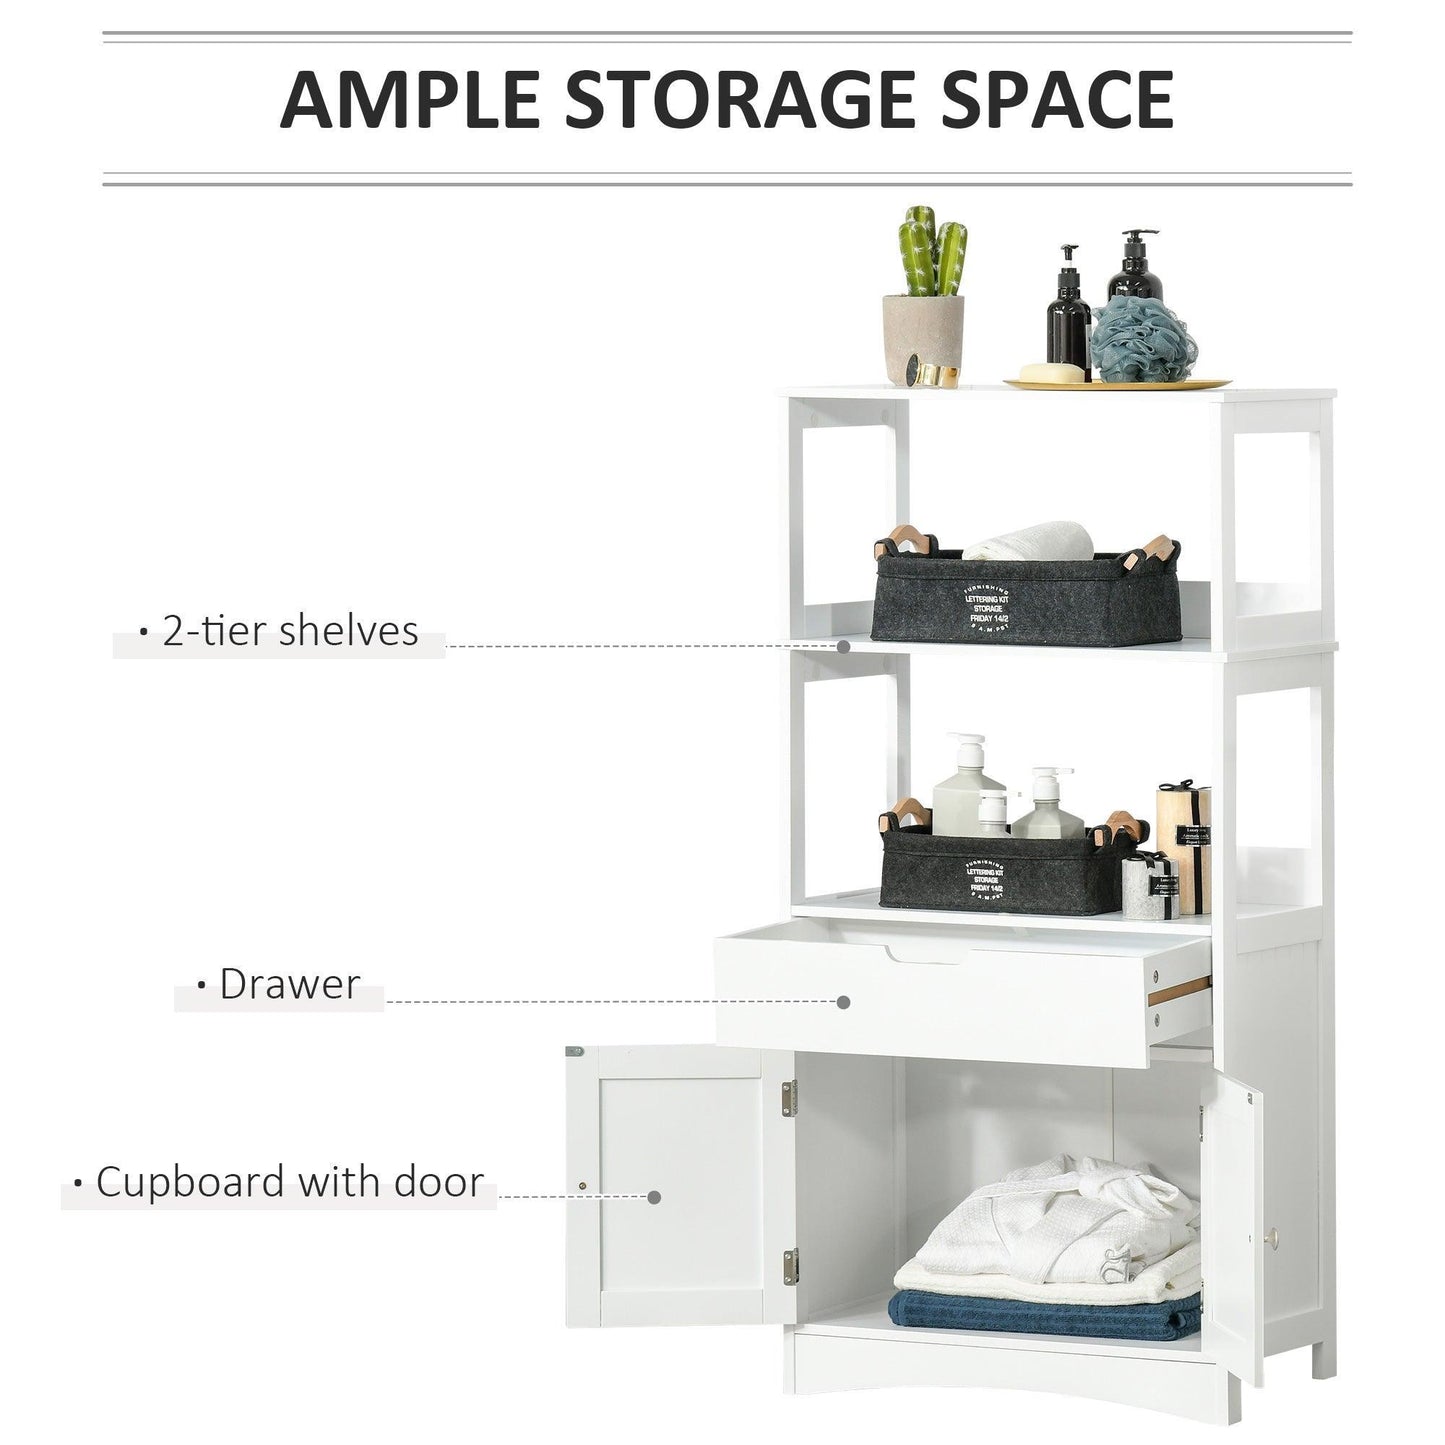 Kleankin Bathroom Cabinet: White Floor & Kitchen Storage - ALL4U RETAILER LTD